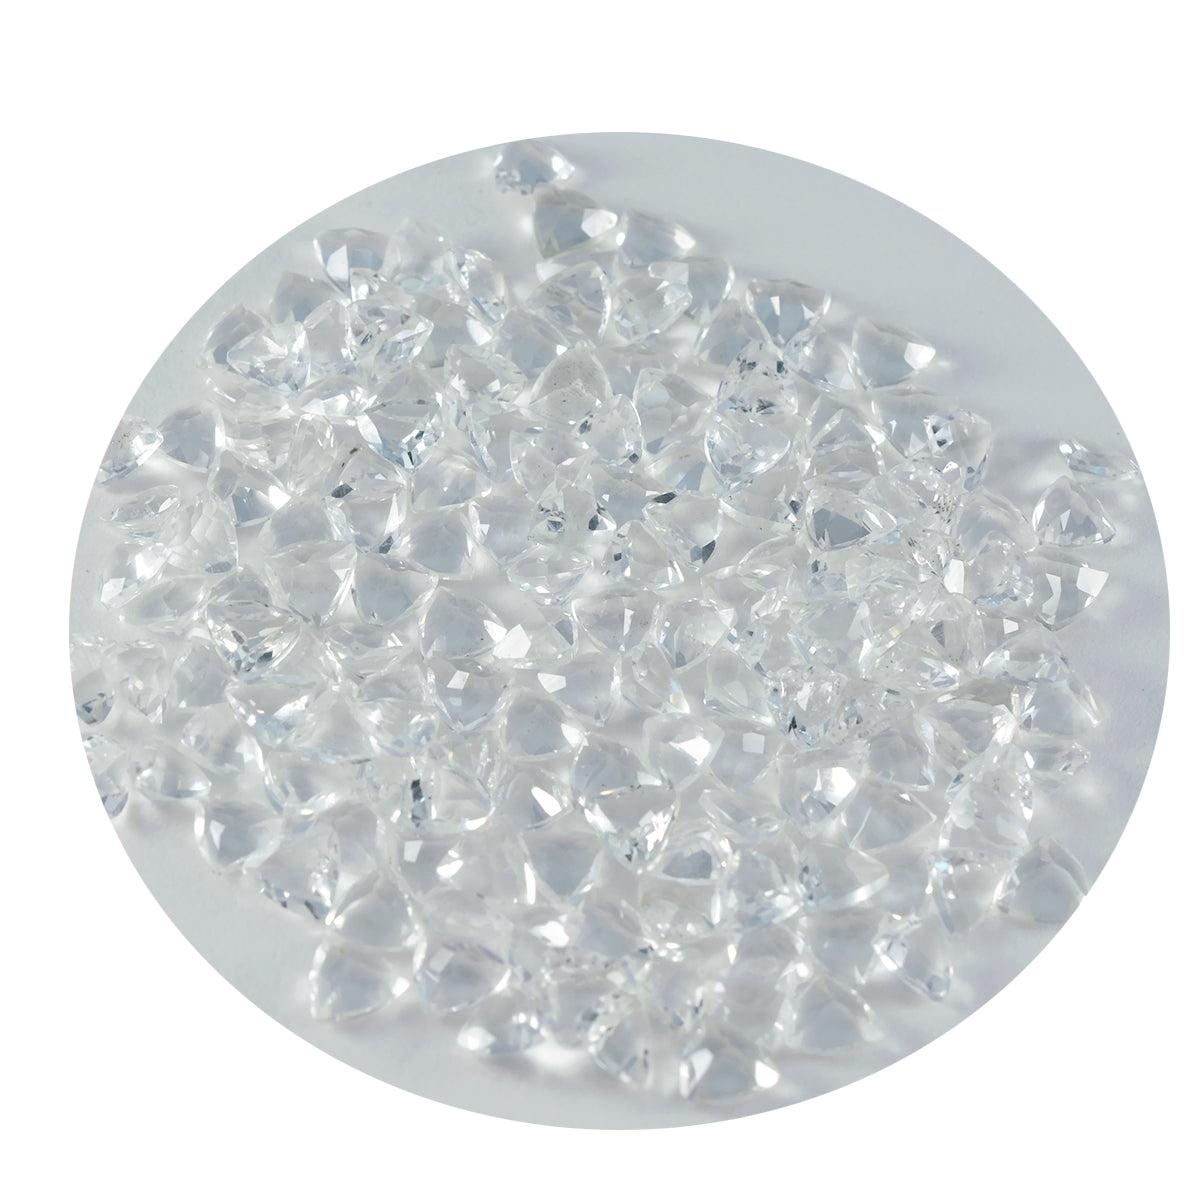 Riyogems 1 pièce de quartz cristal blanc à facettes 5x5mm en forme de billion de pierres précieuses de merveilleuse qualité